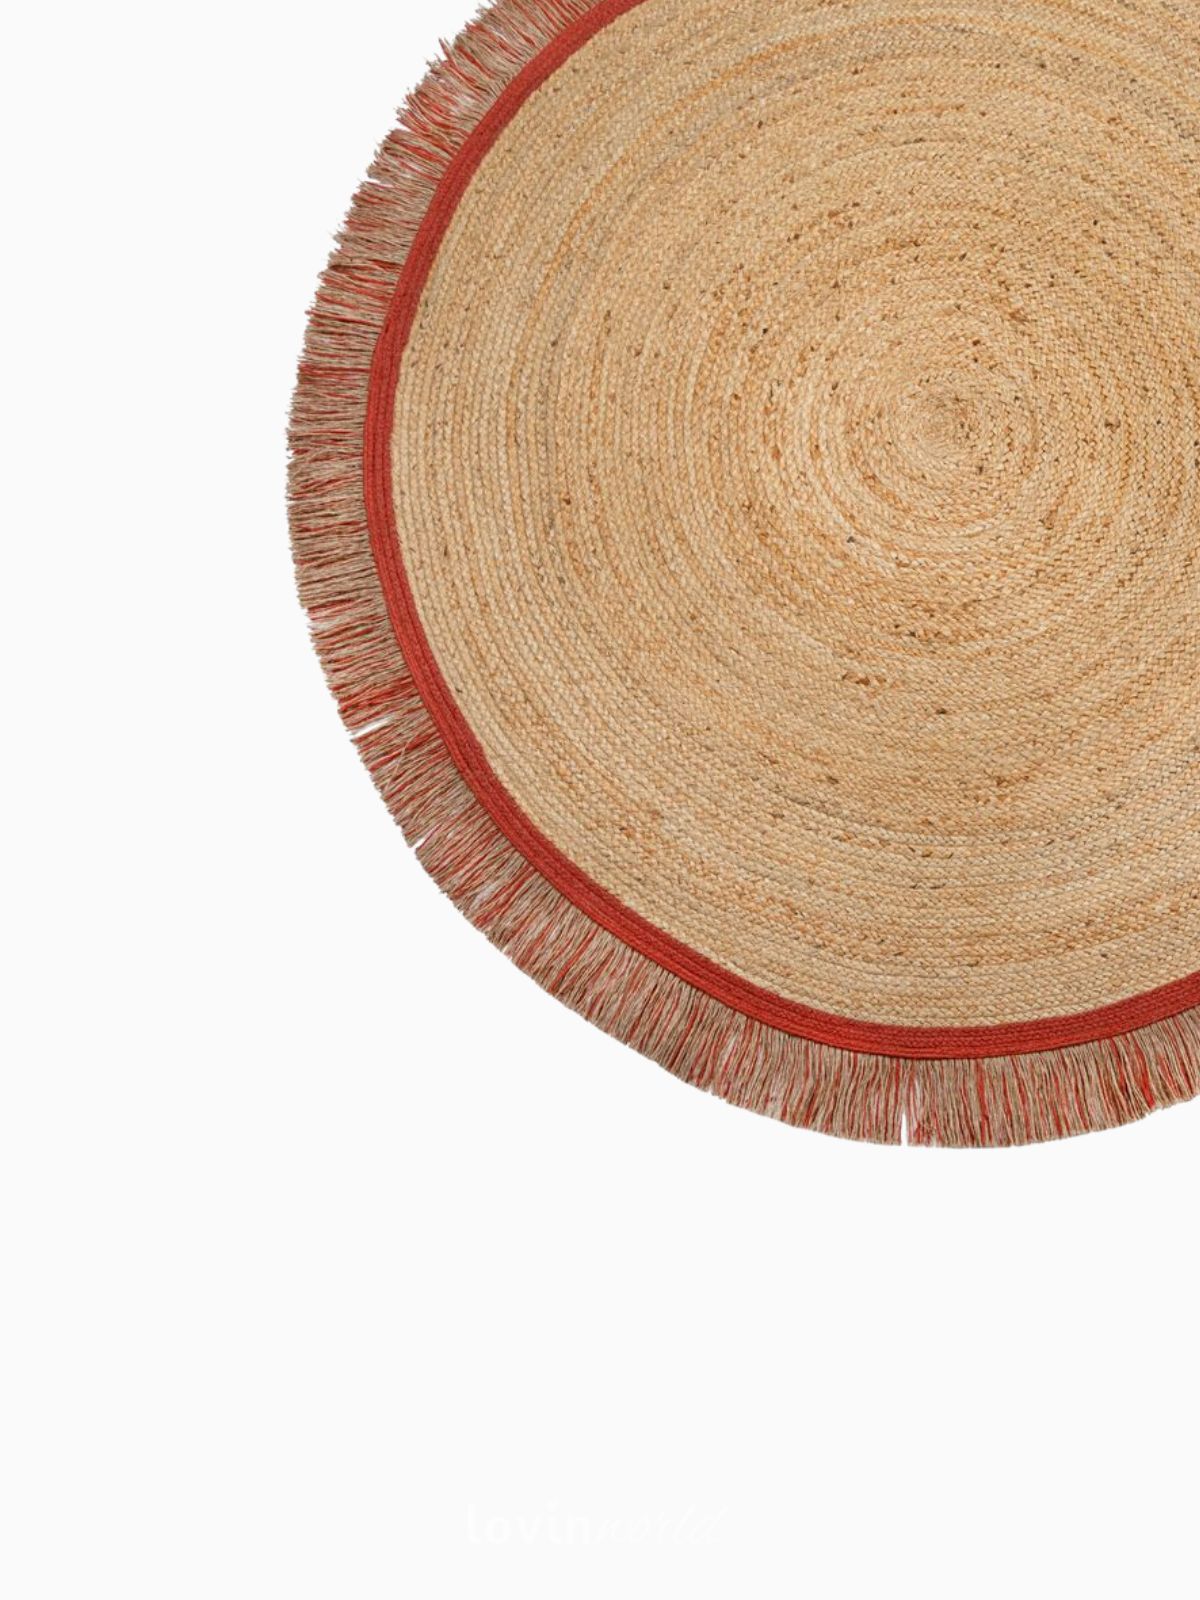 Tappeto rotondo Kahana in iuta, in colore rosso e naturale 180x180 cm.-4